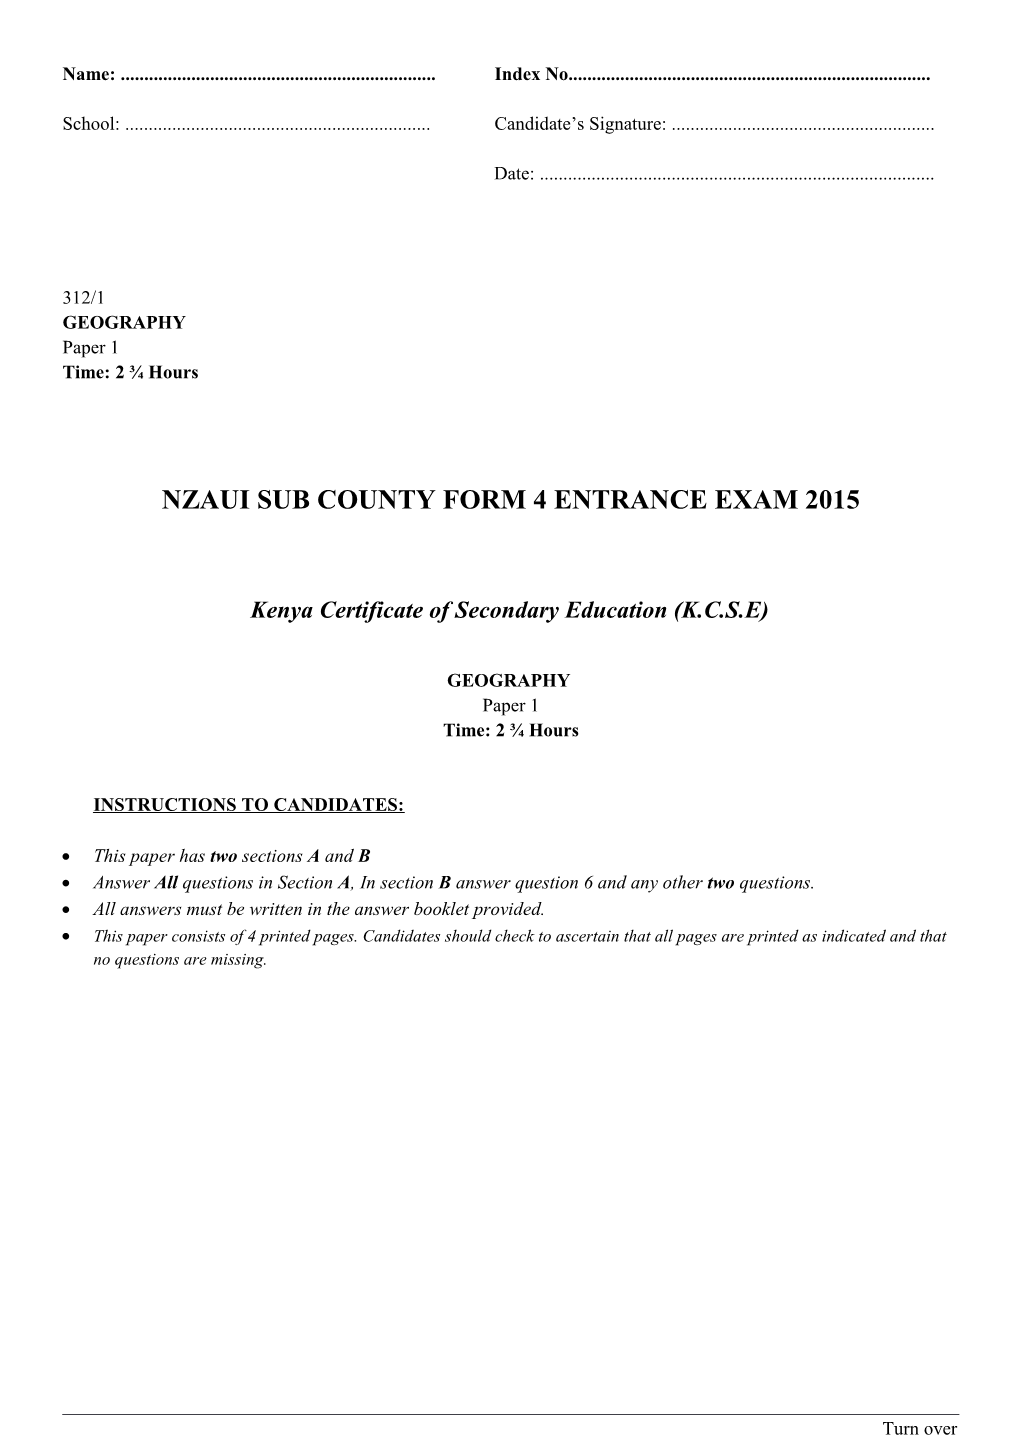 Nzaui Sub County Form 4 Entrance Exam 2015